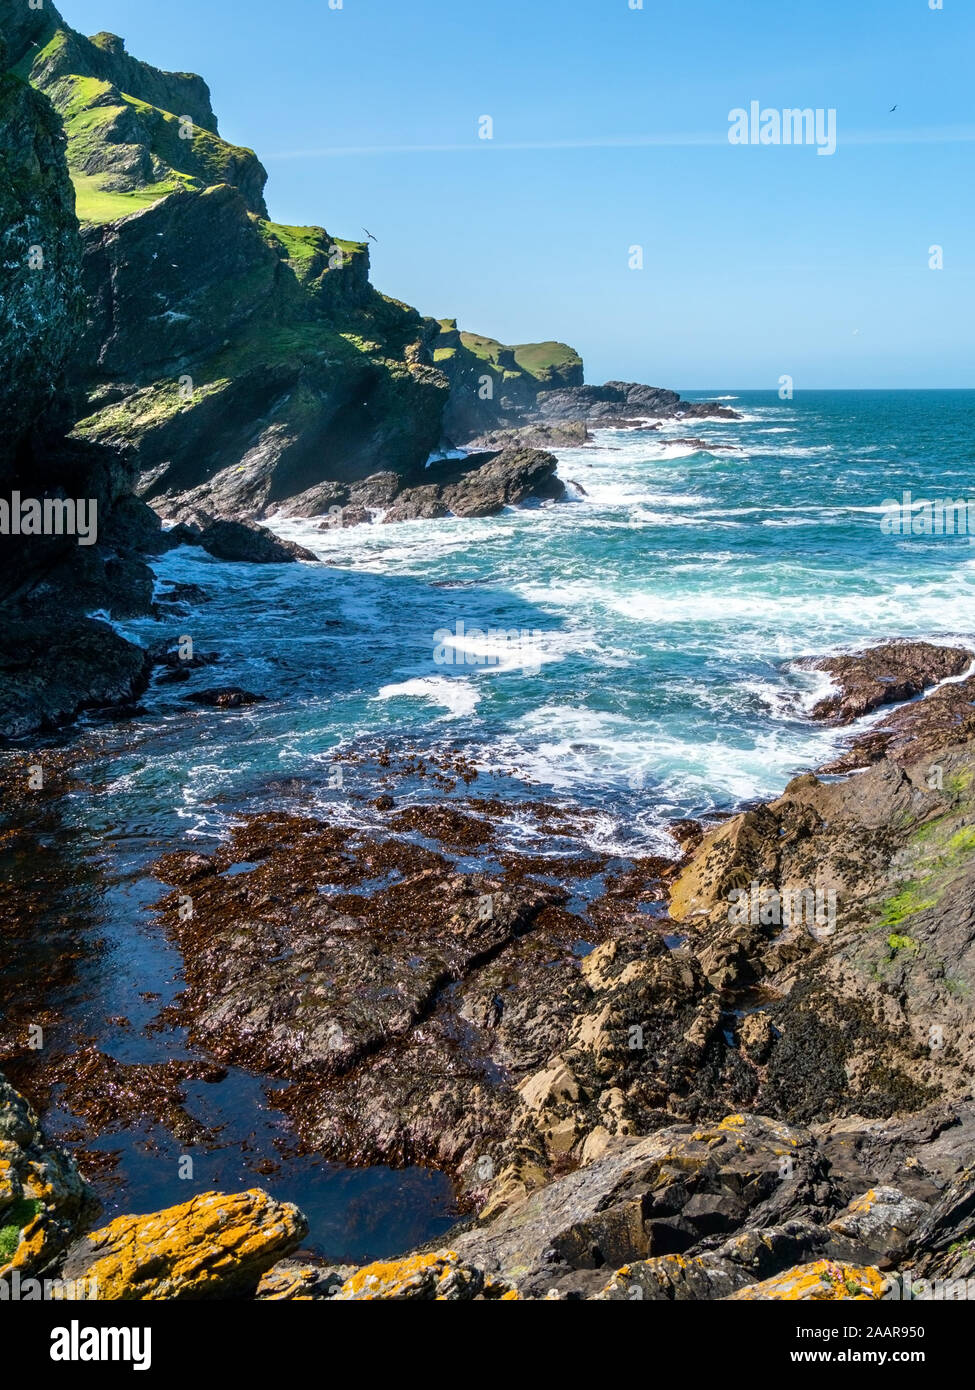 Les falaises de la mer, les vagues et surf à Pig's Paradise,à l'île de Colonsay, Ecosse, Royaume-Uni Banque D'Images